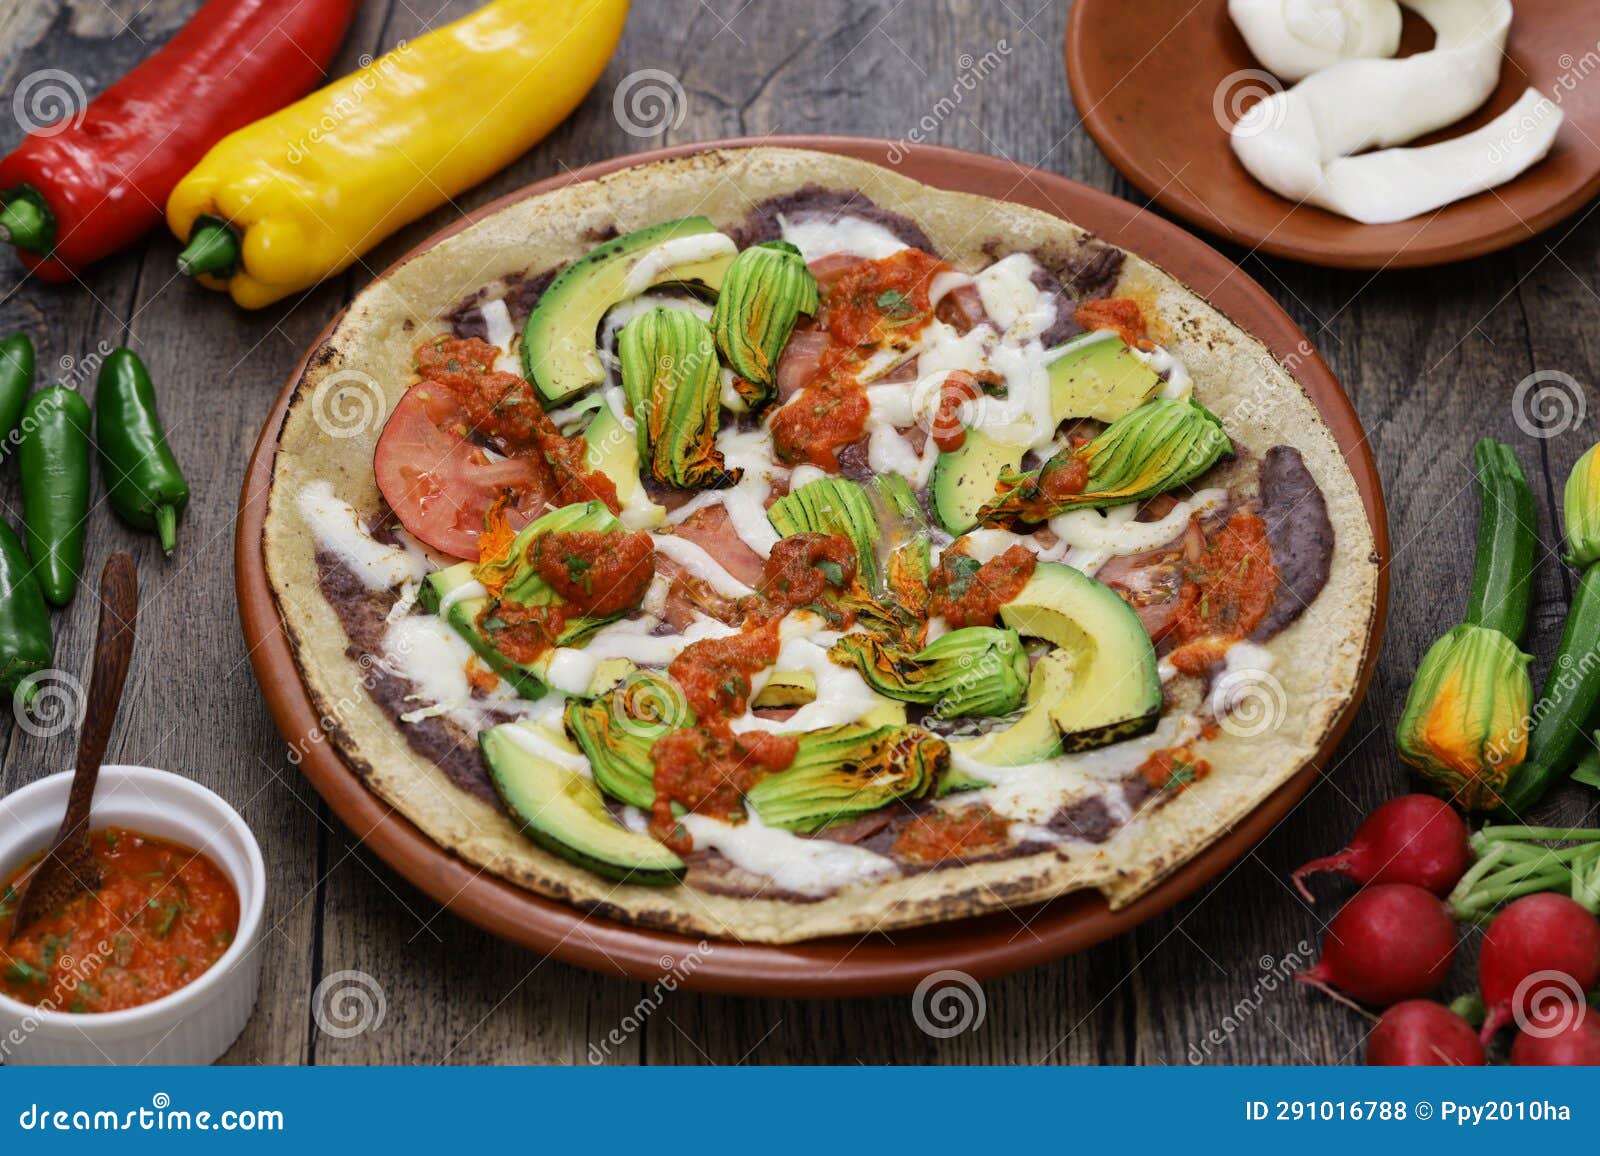 tlayuda, mexican pizza